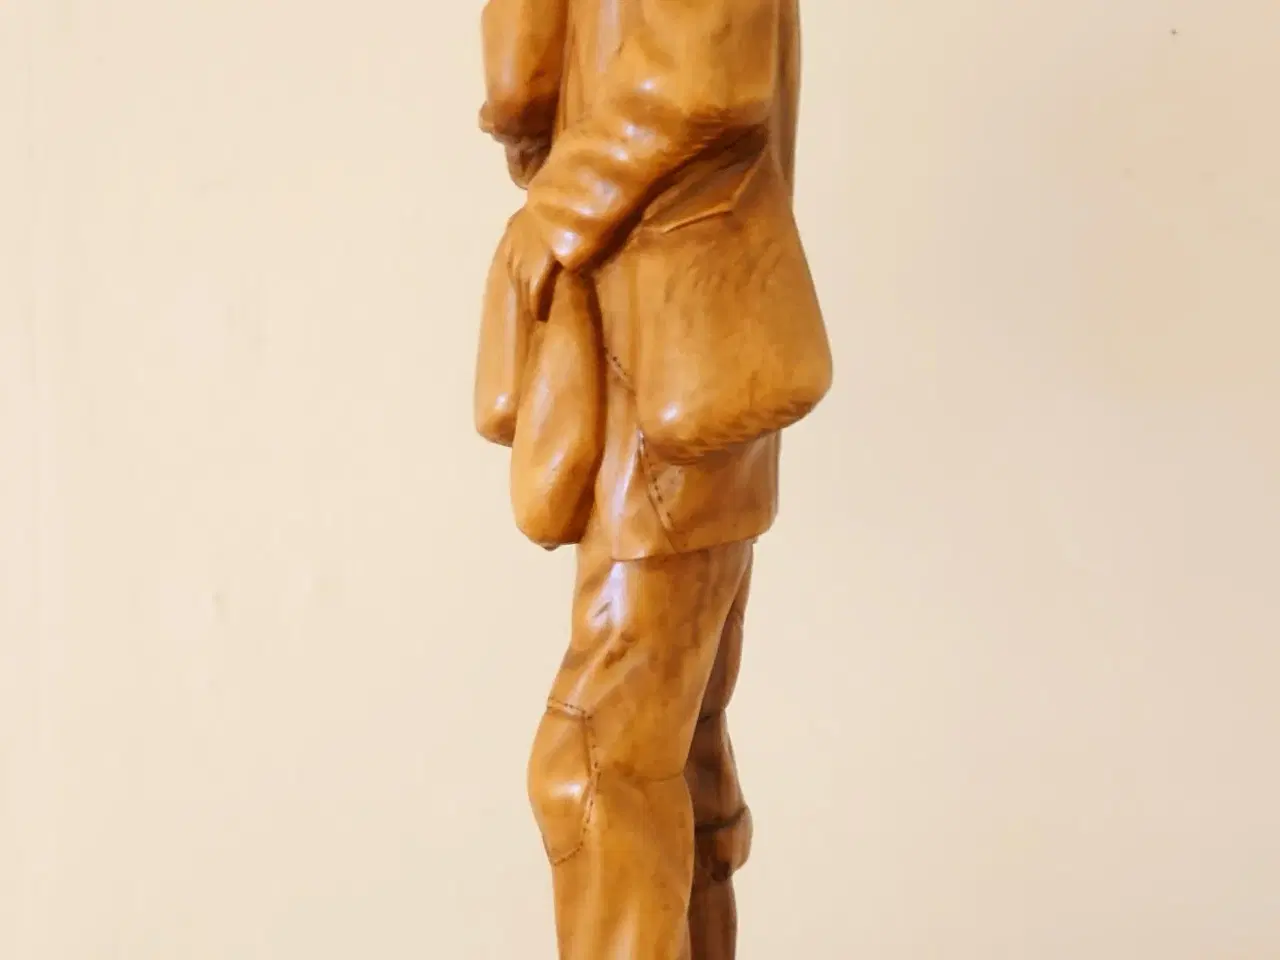 Billede 2 - 52cm høj træfigur af ældre mand.